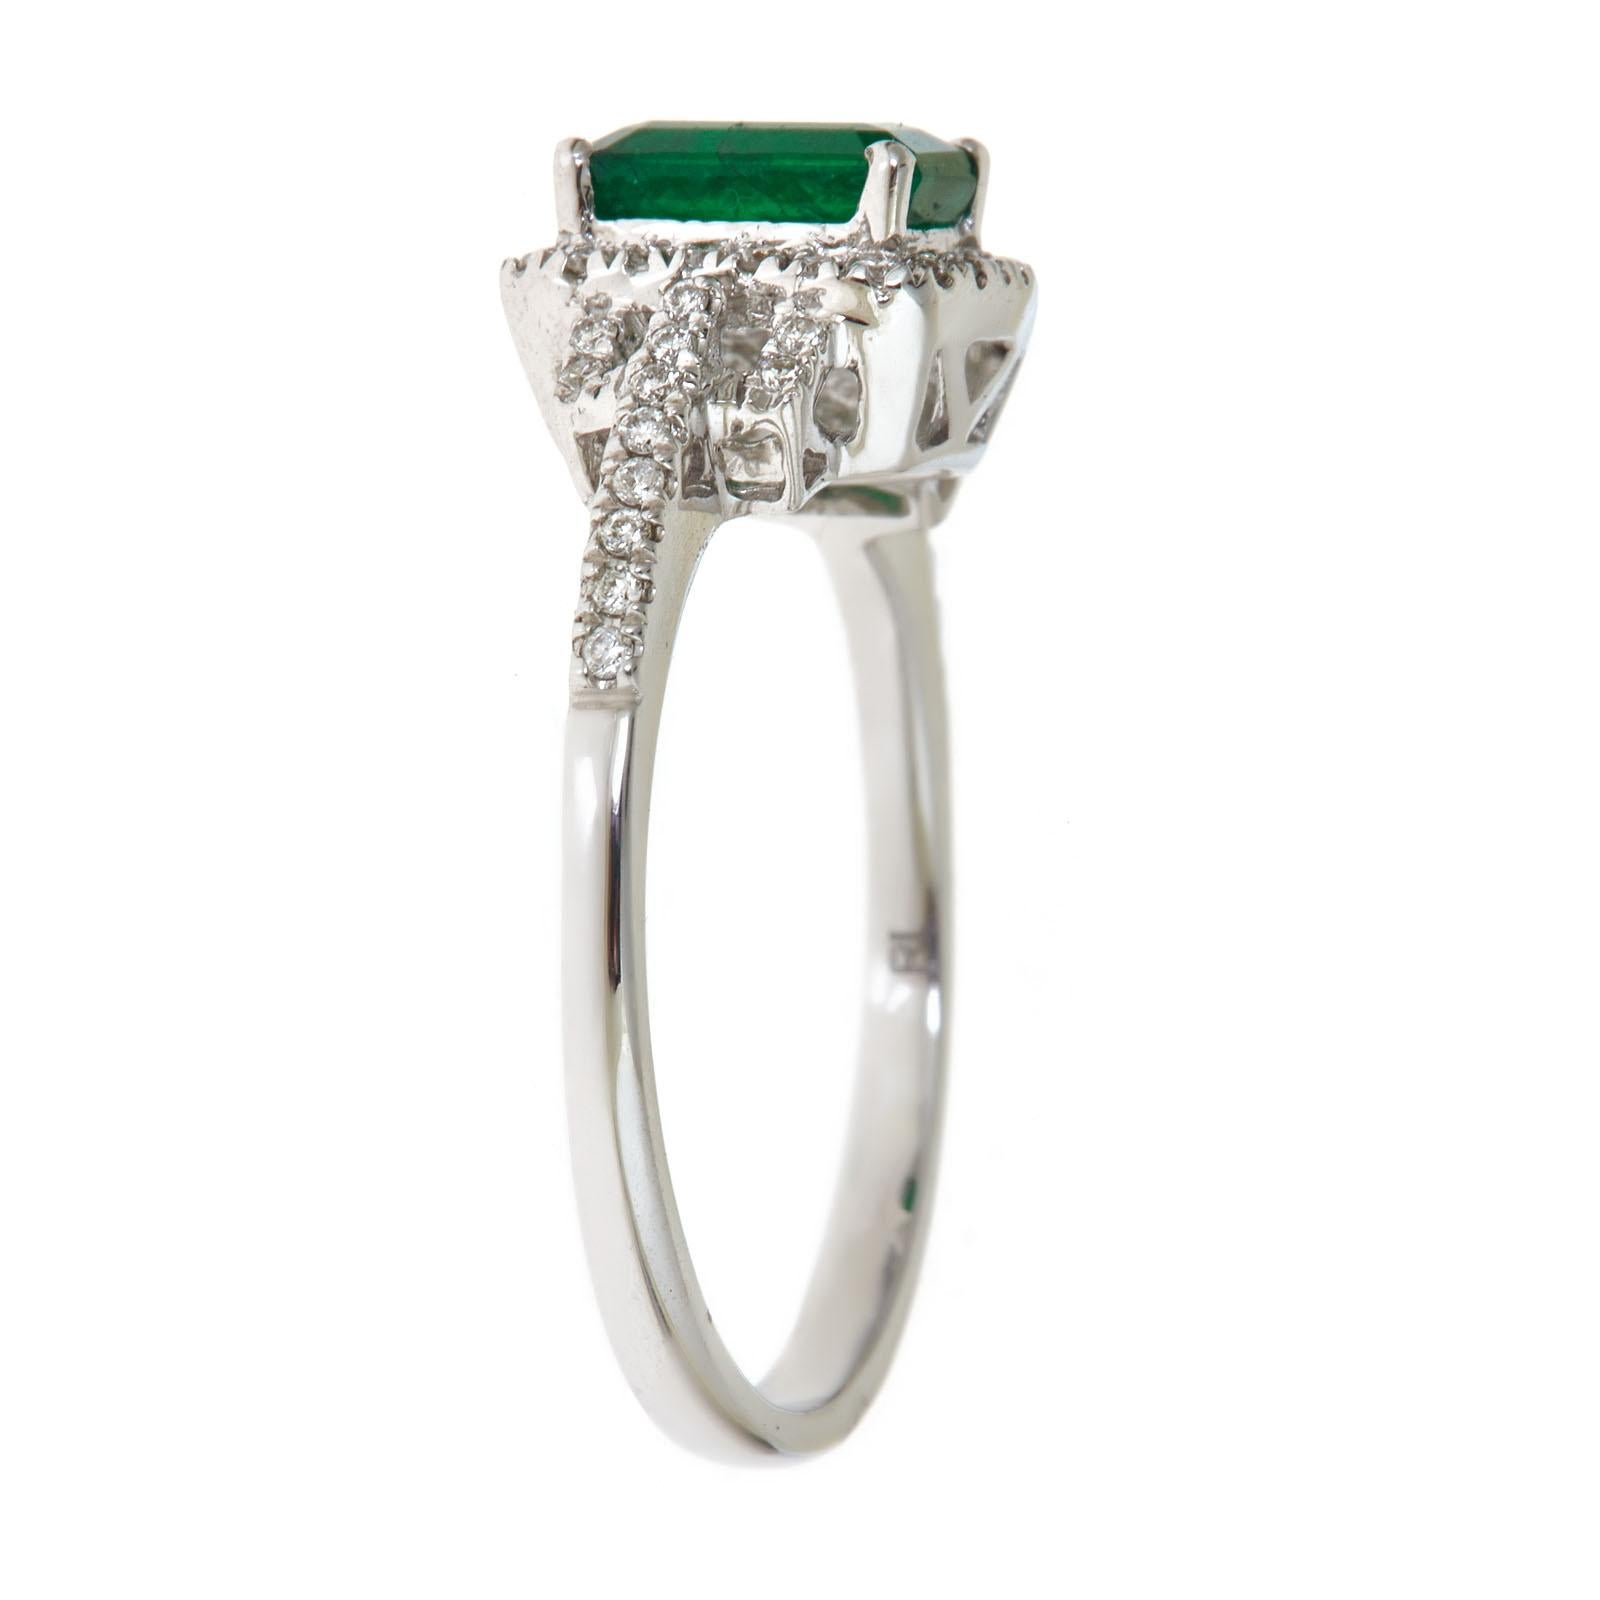 1 carat of emerald price